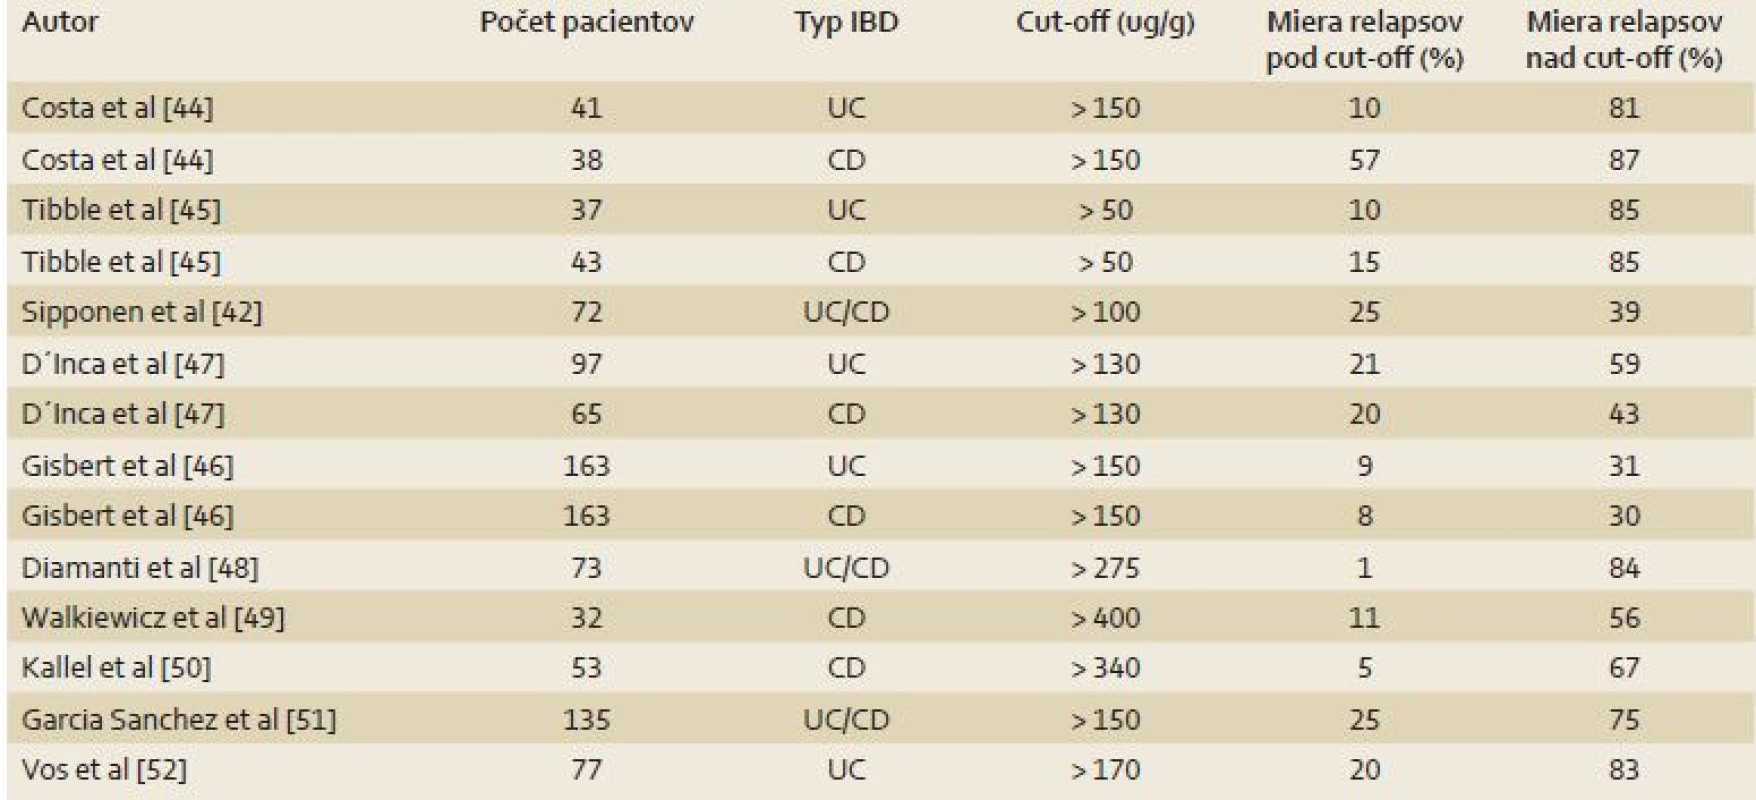 Význam f-cal pre predikciu relapsu IBD [11].
Tab. 4. The importance of fecal calprotectin for the prediction of IBD relapse [11].